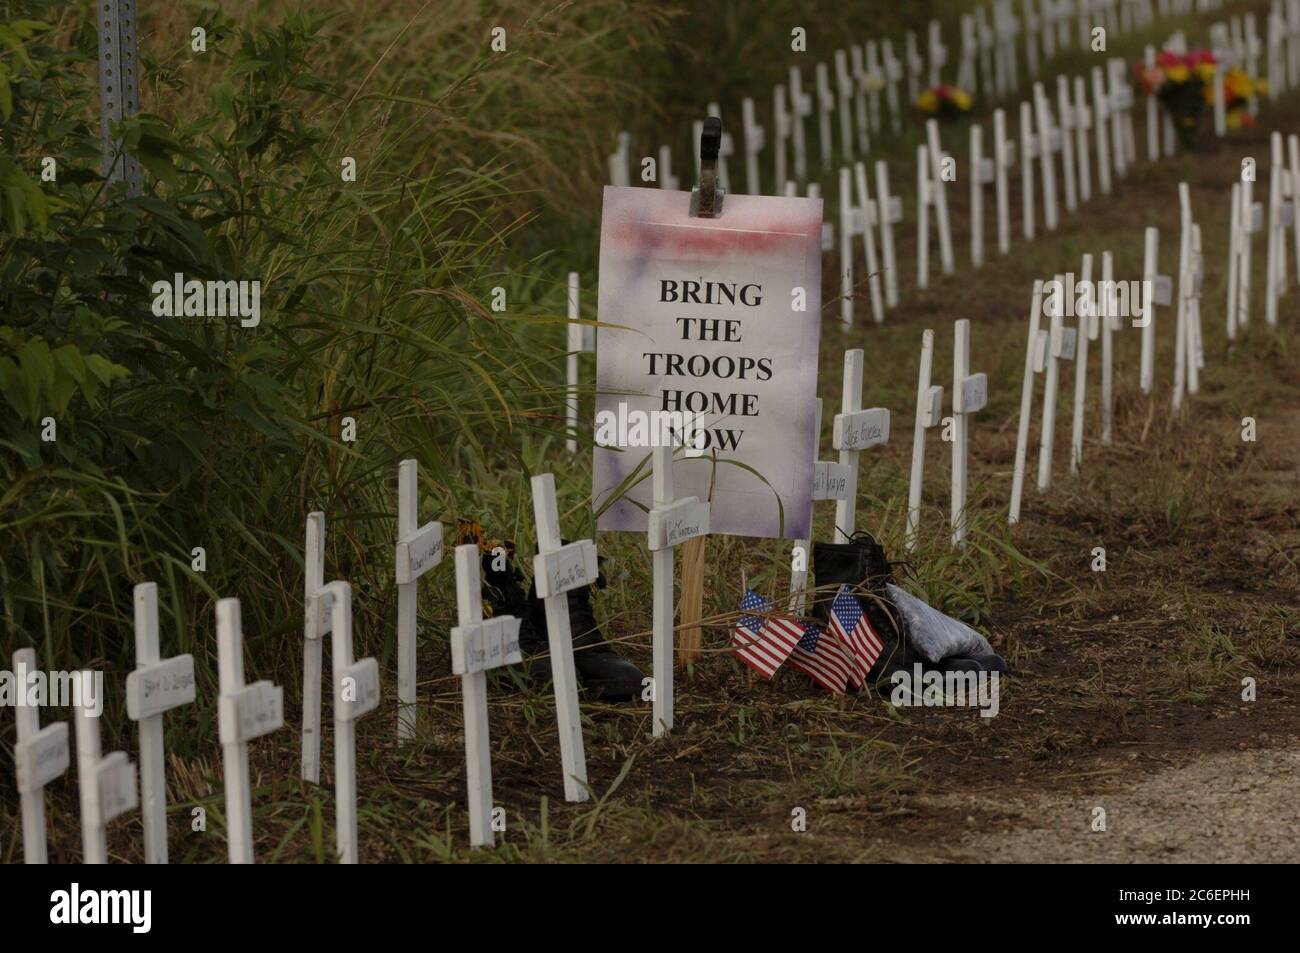 Crawford, Texas 12 août 2005 : site de protestation connu sous le nom de 'Camp Casey' où environ 100 manifestants contre la guerre en Irak tiennent une veillée pendant les vacances du président américain Bush en août dans son ranch voisin. Les croix représentent des soldats qui ont été tués en Irak. ©Bob Daemmrich Banque D'Images